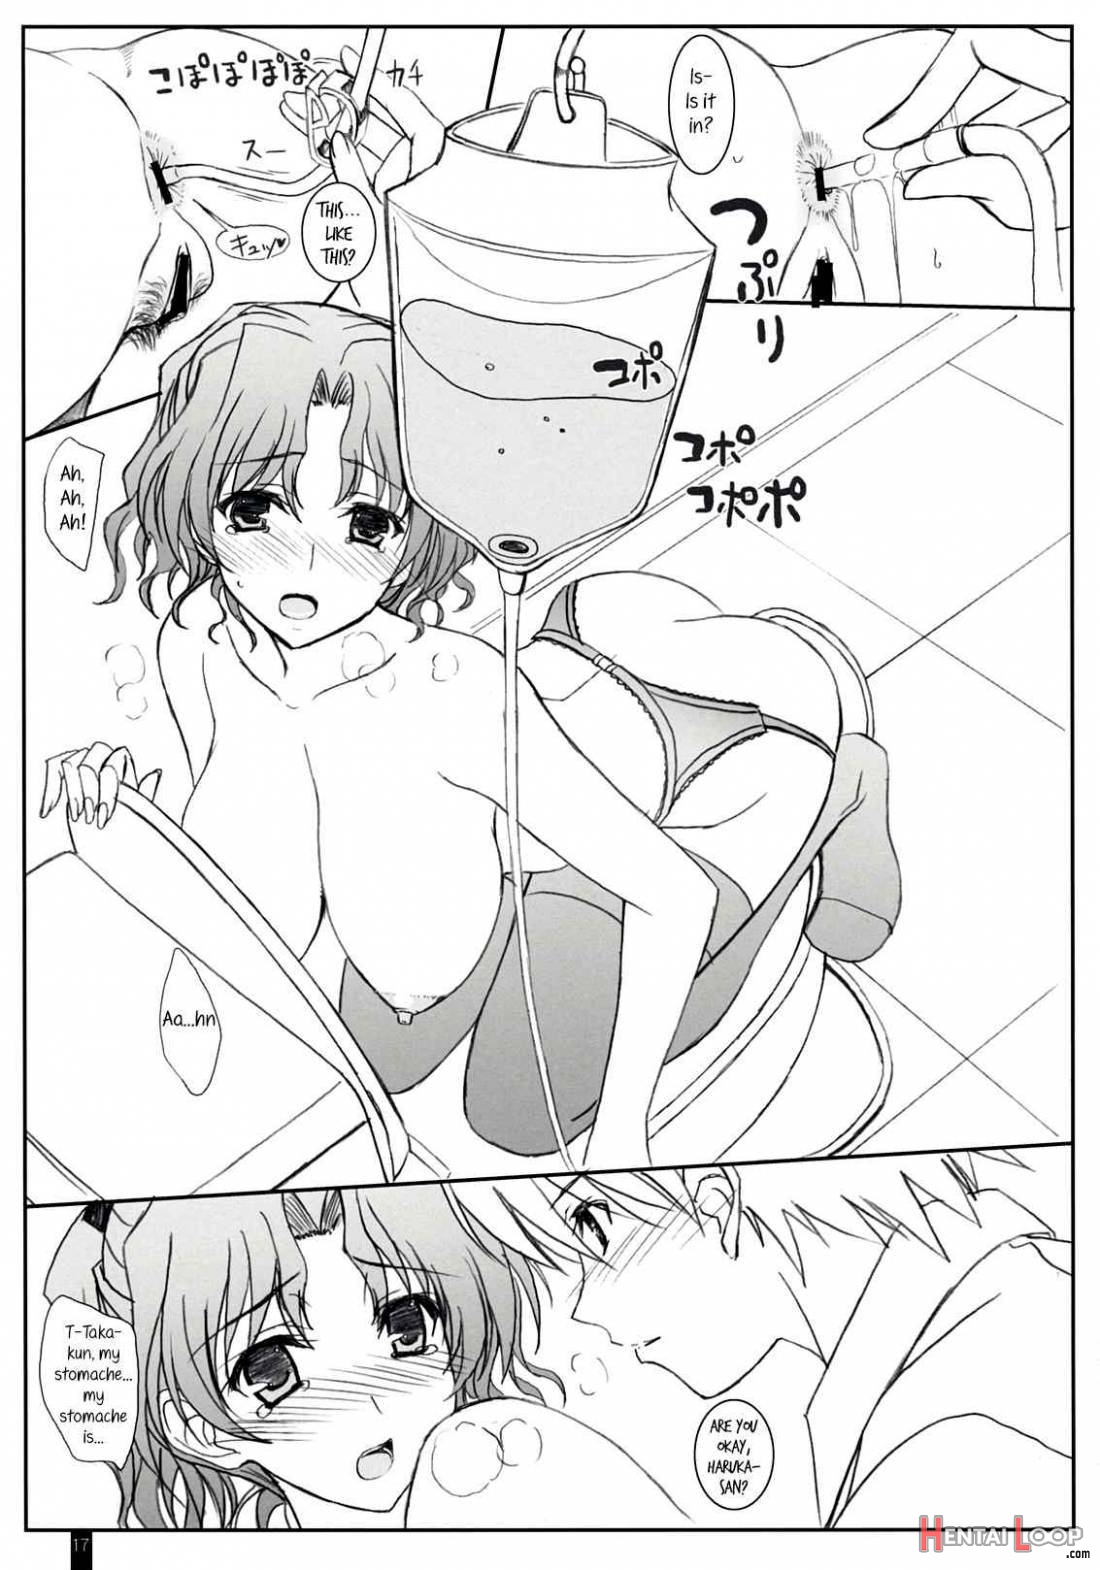 Purity Haruka-san page 16